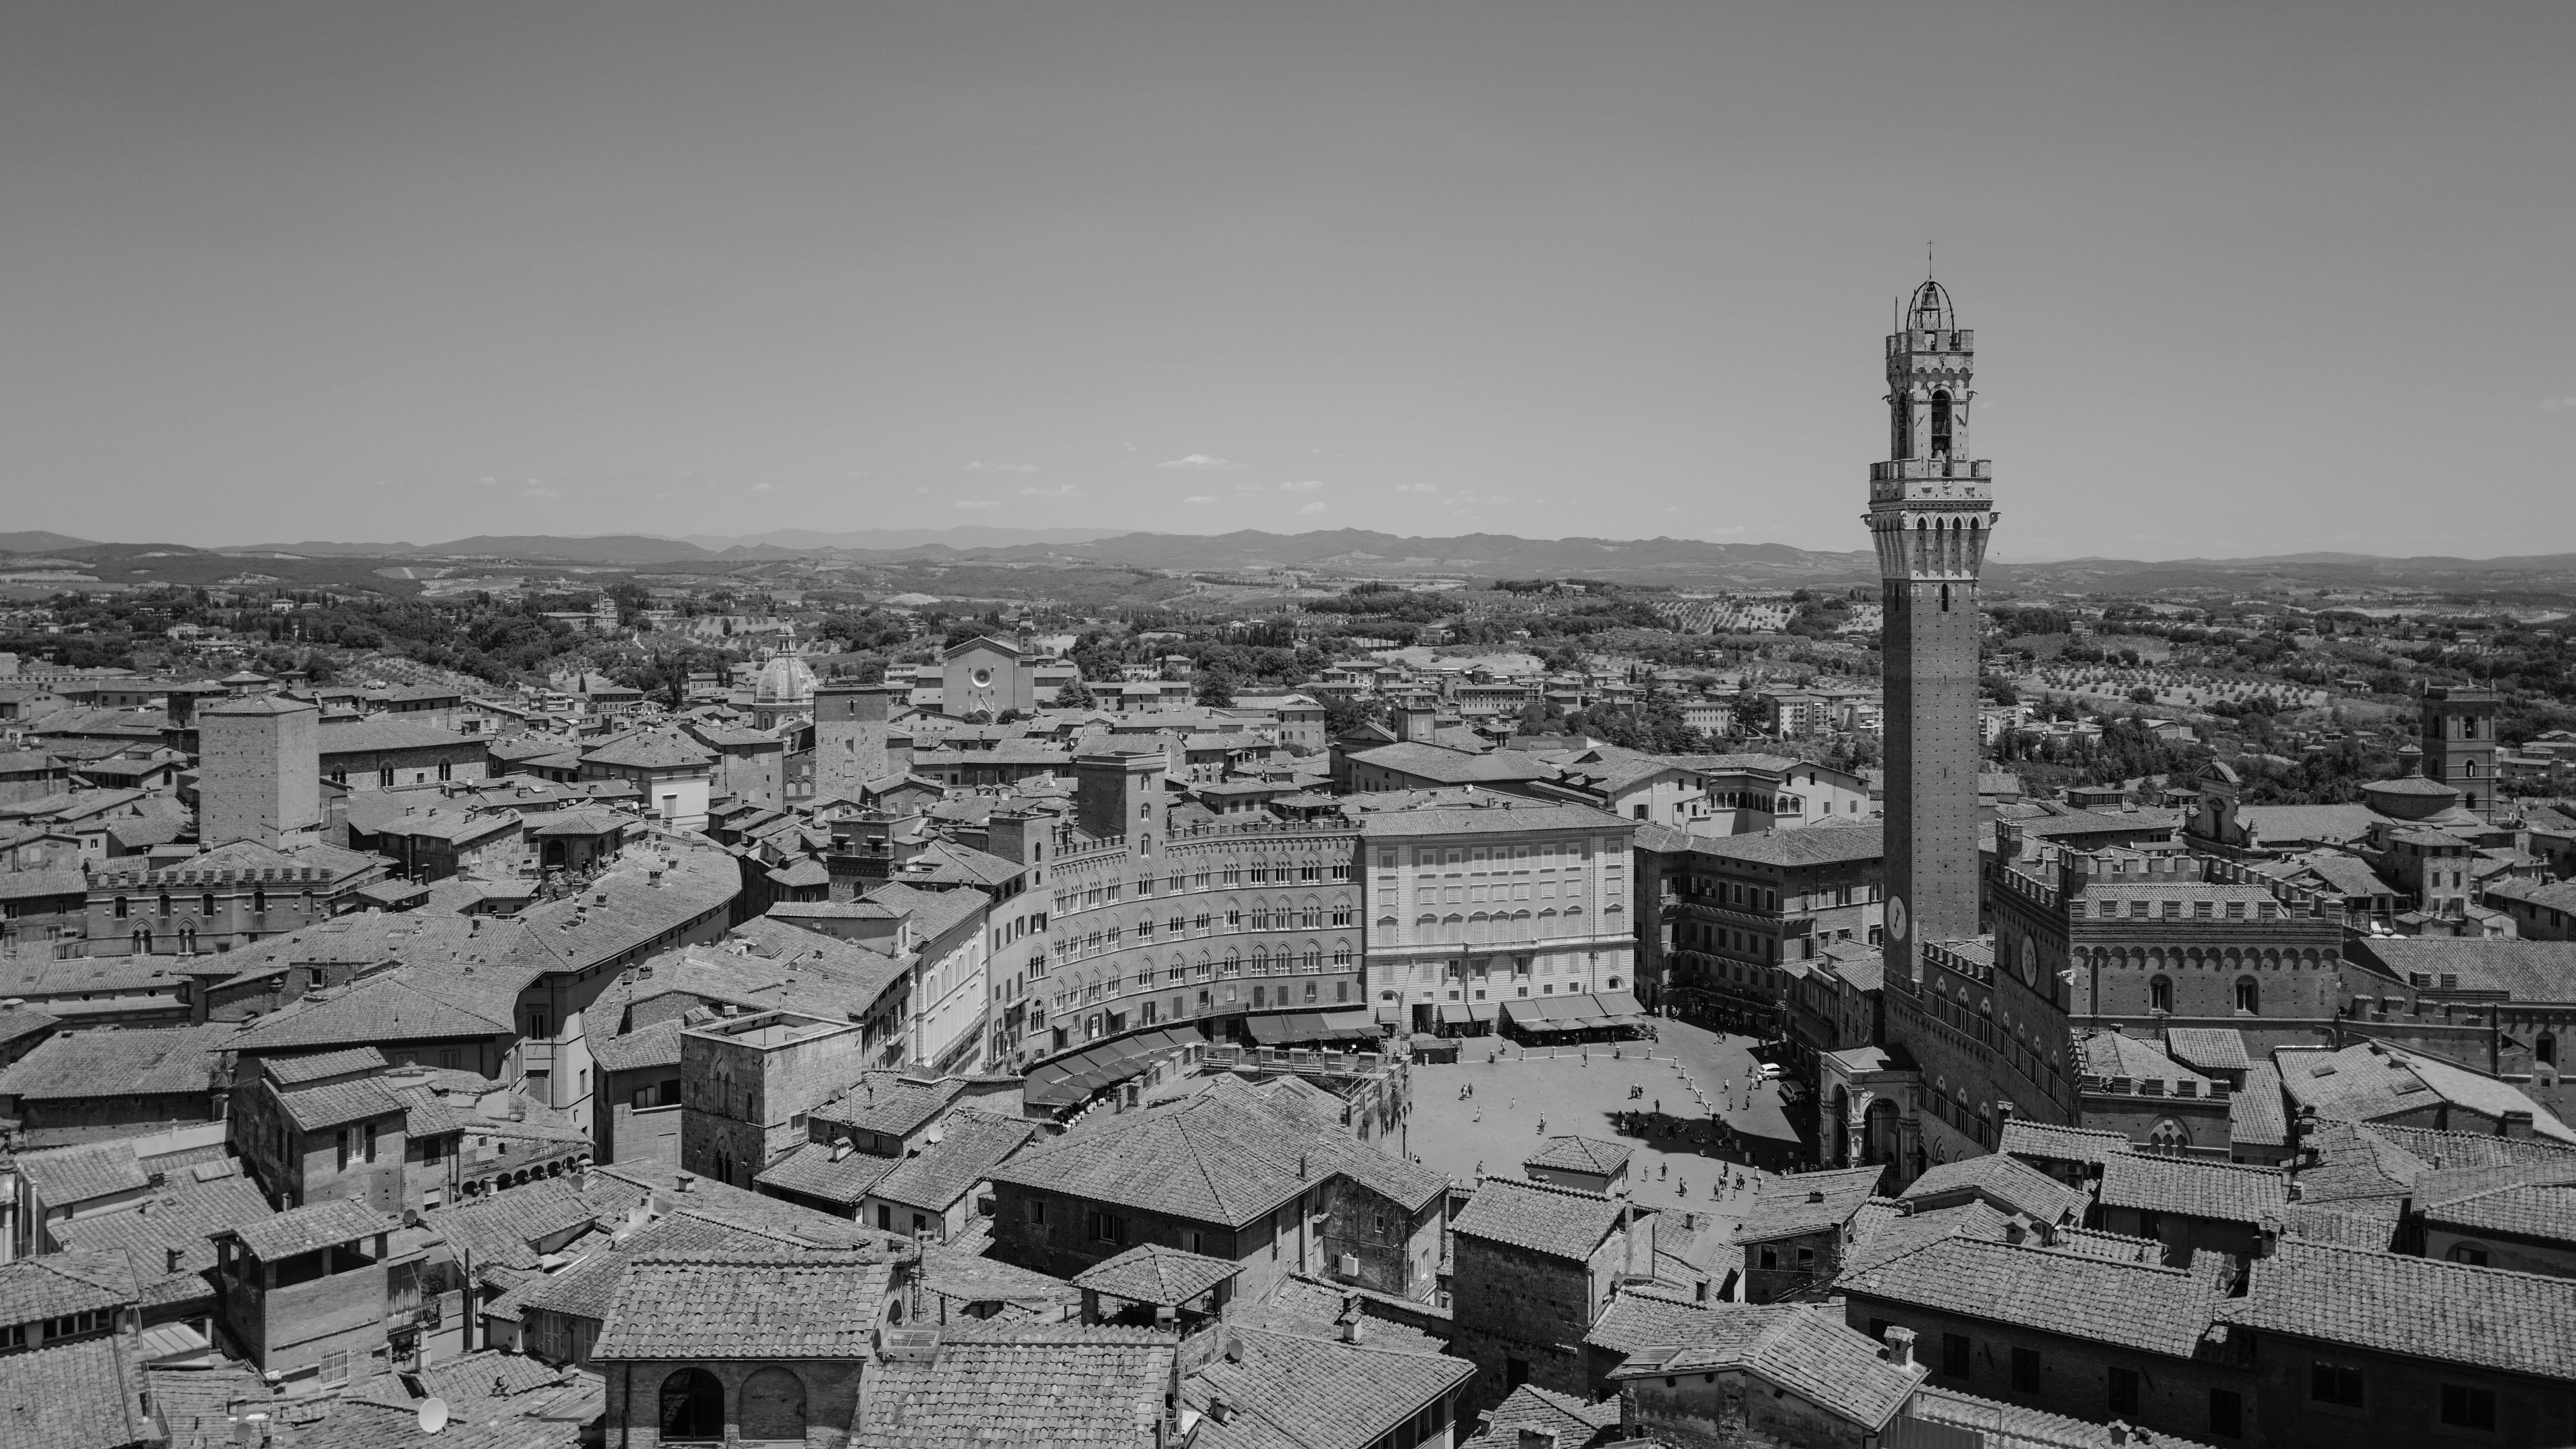 Auf dem Bild sieht man in Schwarz-Weiß die Innenstadt von Siena von weiter oben aufgenommen